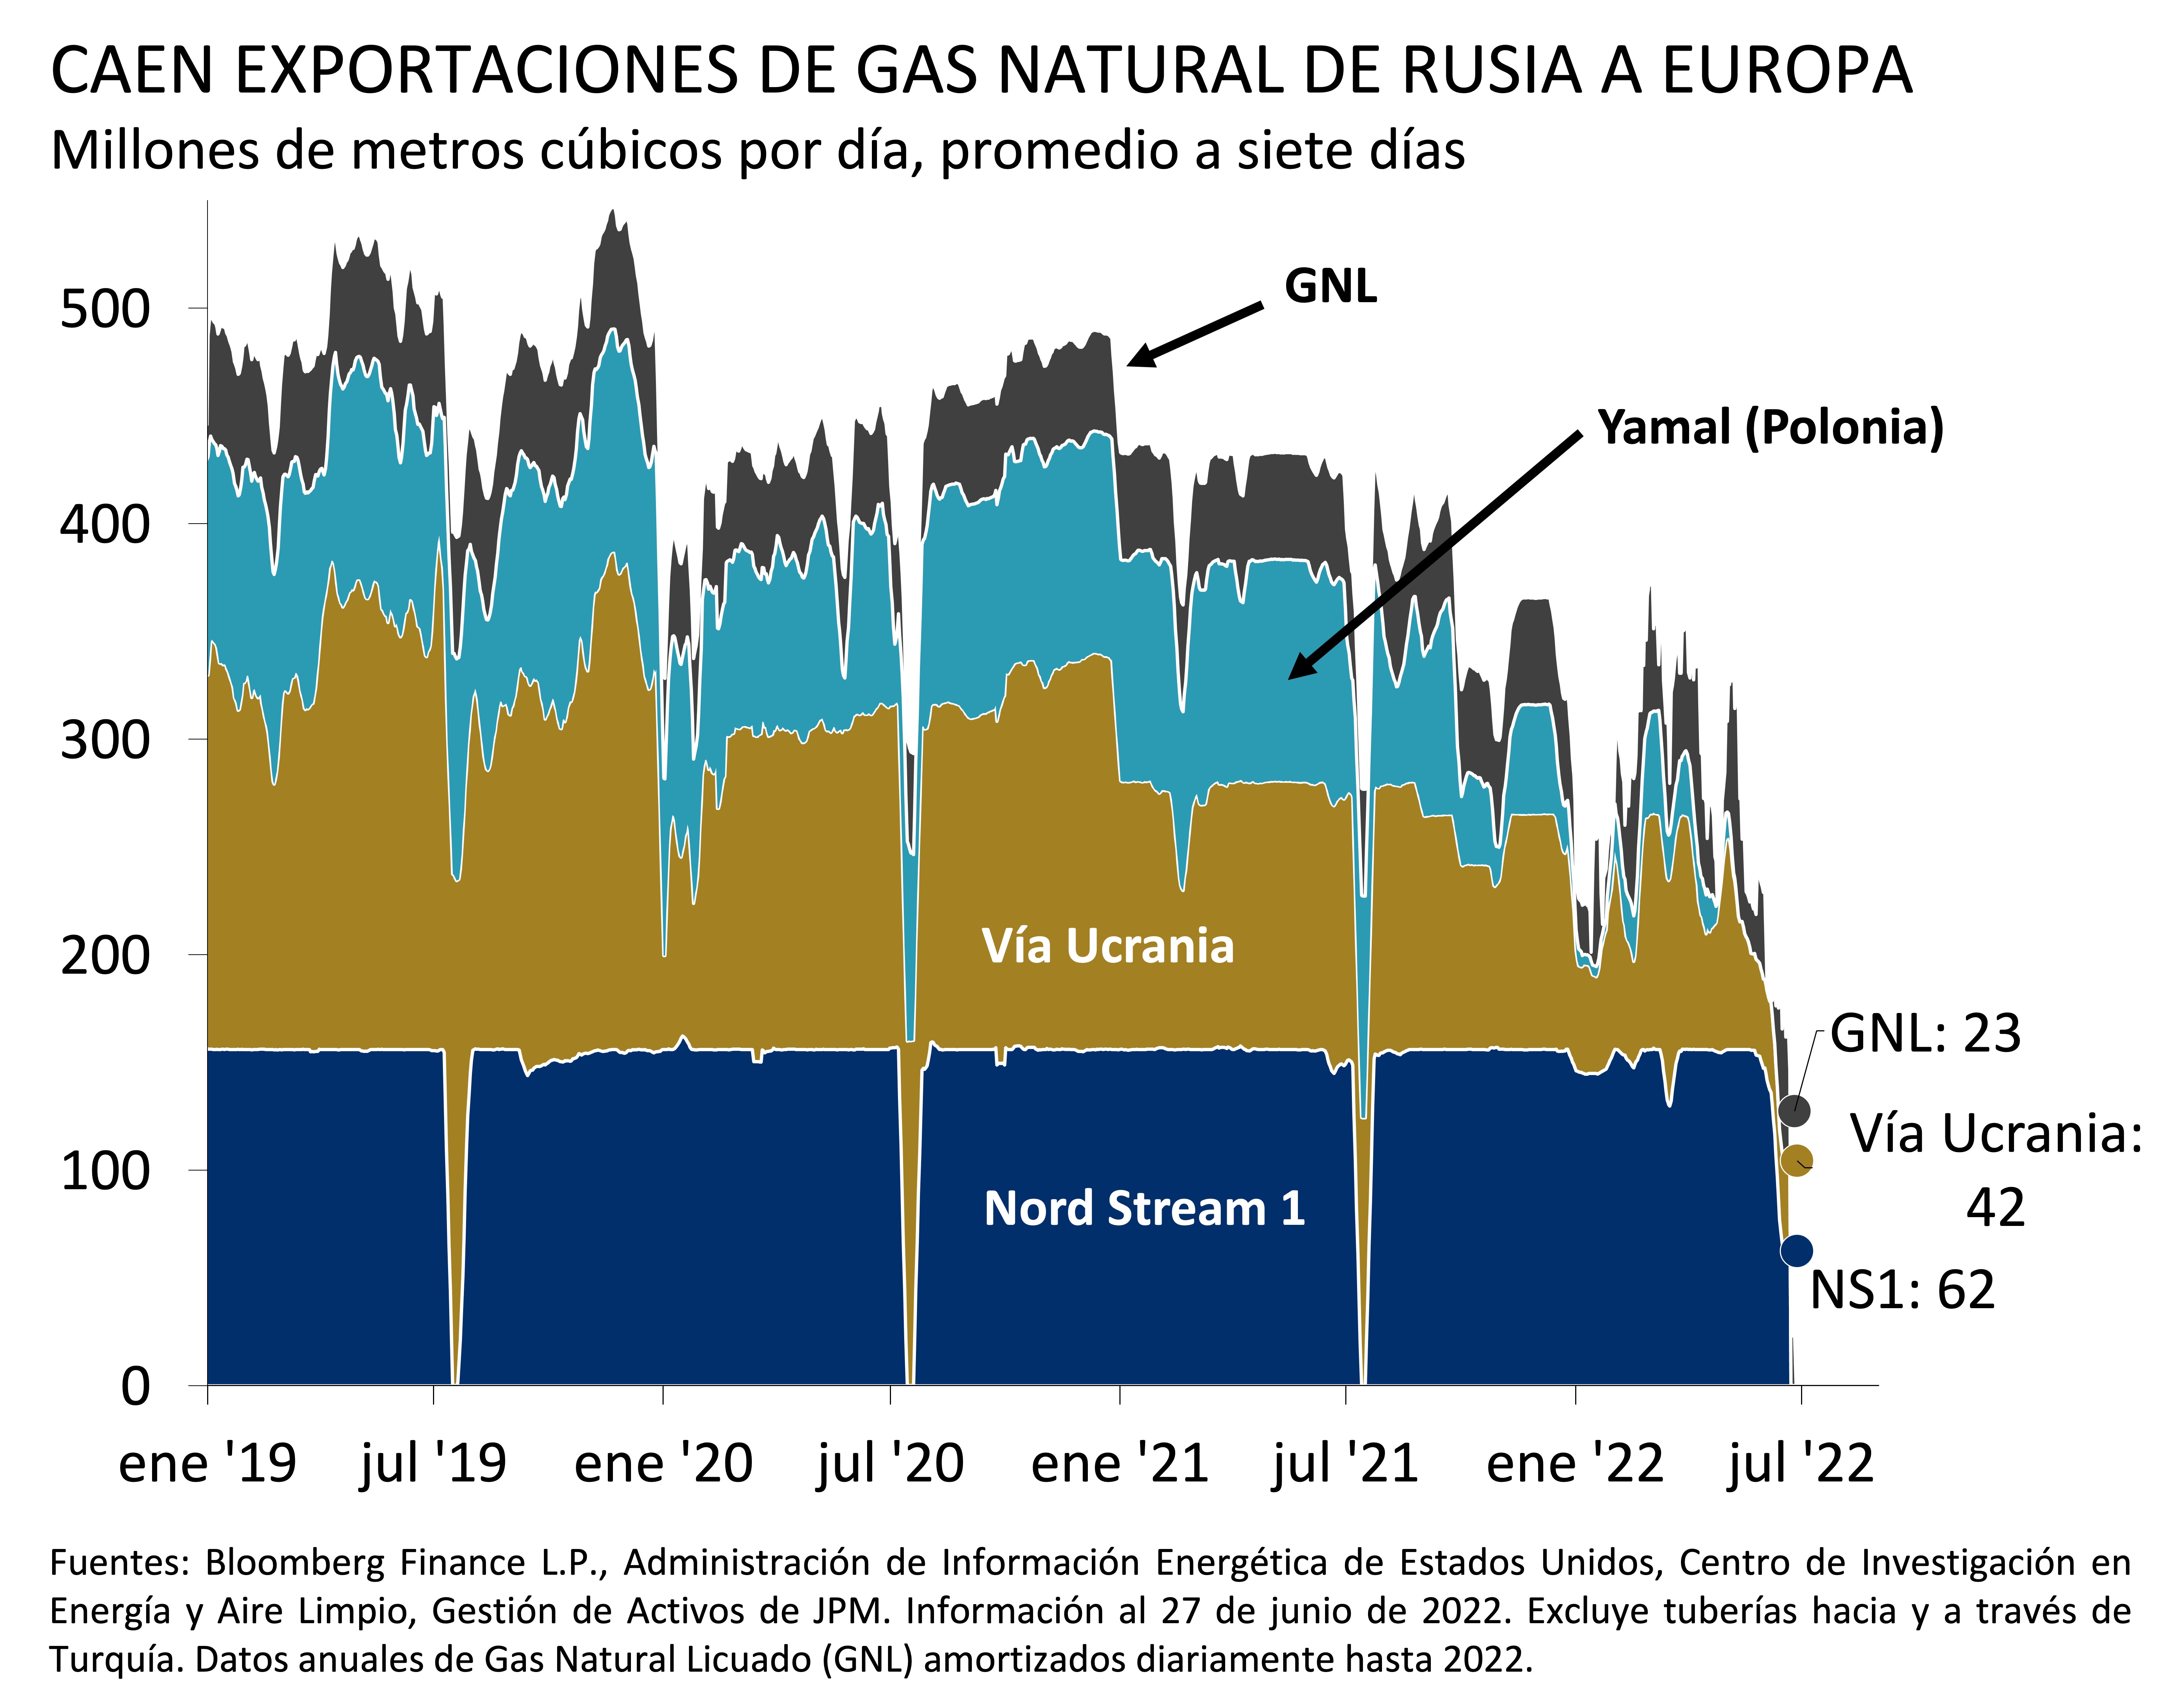 : Este gráfico muestra el promedio a siete días de las exportaciones de gas natural ruso a Europa en millones de metros cúbicos por día entre enero de 2019 y julio de 2022.